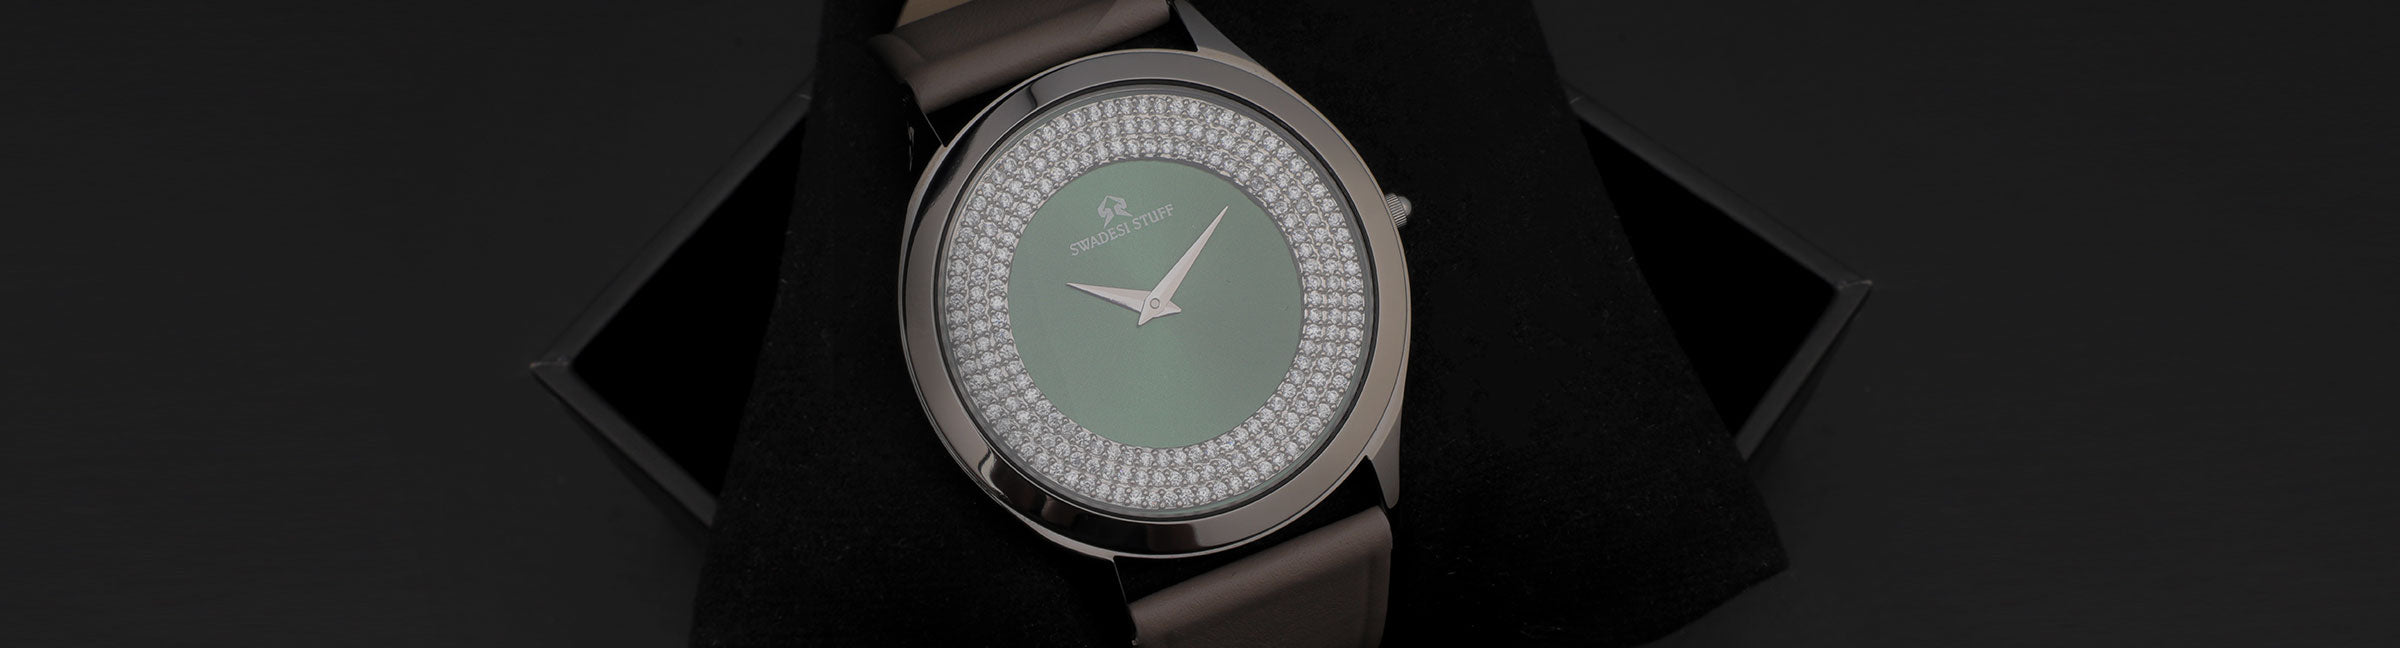 Diamond Watches / Gem Set Watches